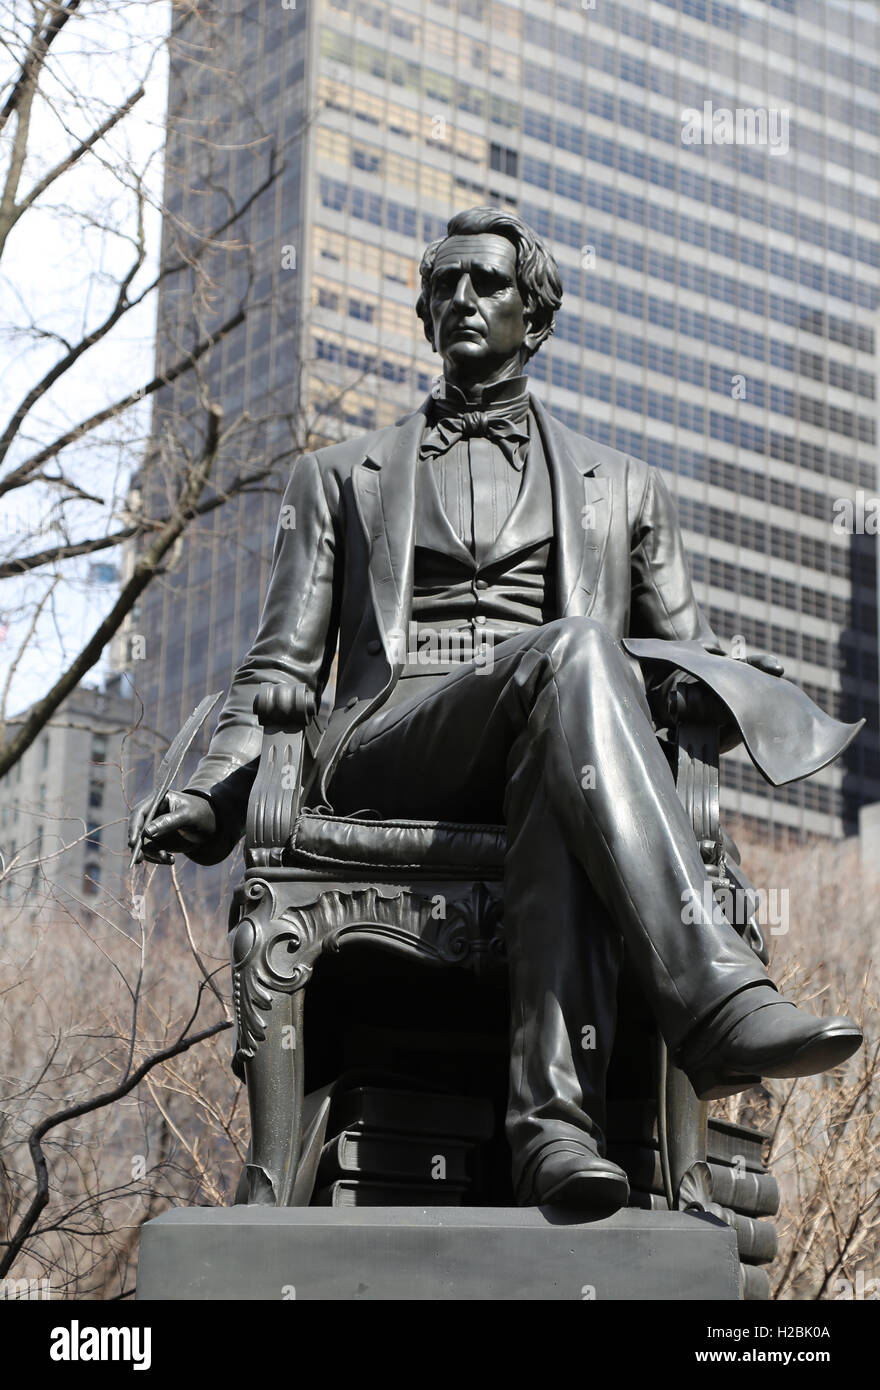 Statue de l'homme d'état américain William Henry Seward (1801-1872) par Randolph Rogers (1825-1892). Madison Square Park. New York. Usa Banque D'Images